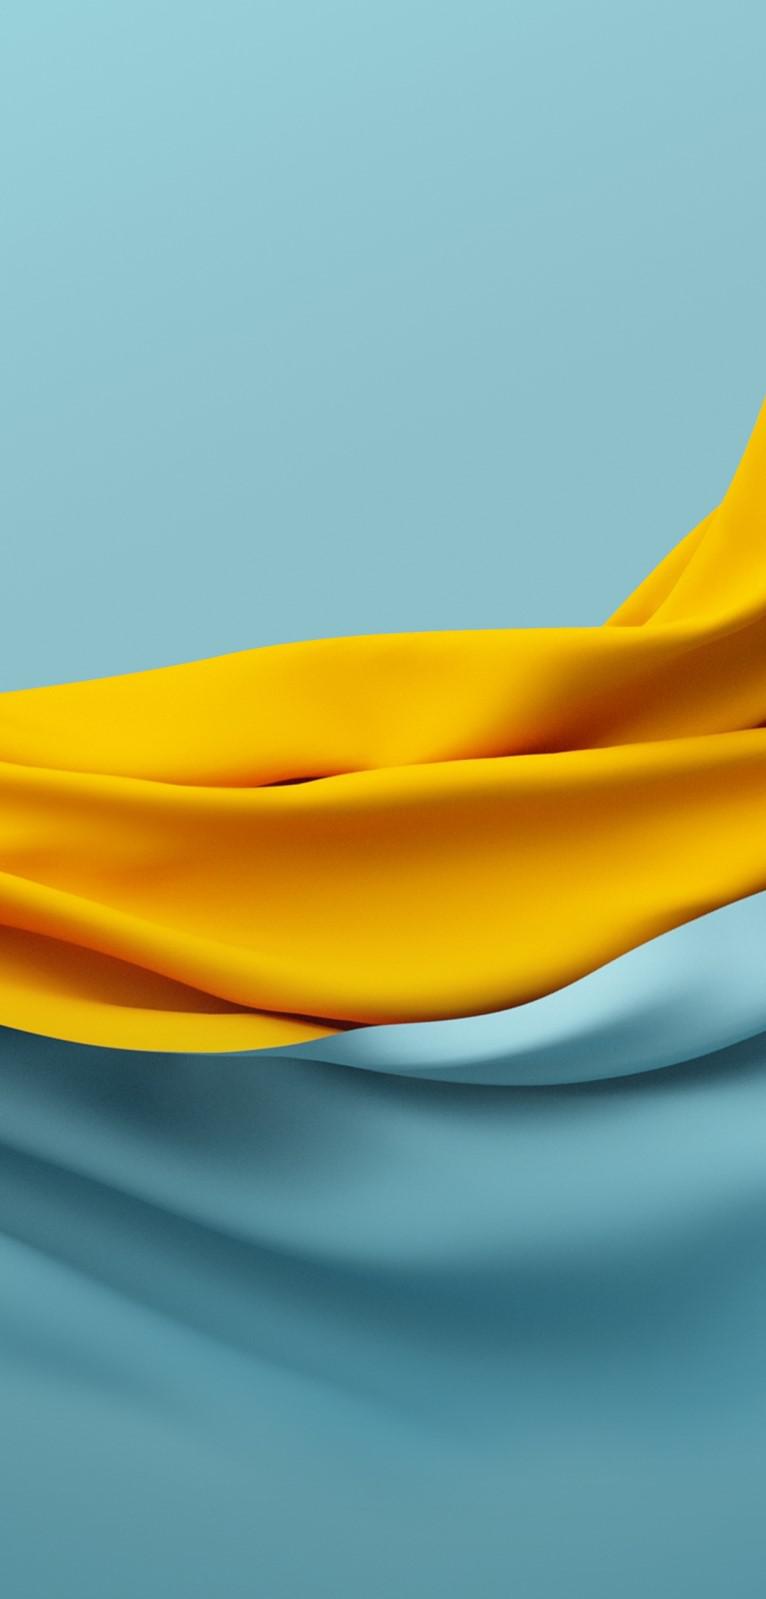 عکس زمینه رنگ زرد و آبی فیروزه ای طرح پارچه پرچمی پس زمینه